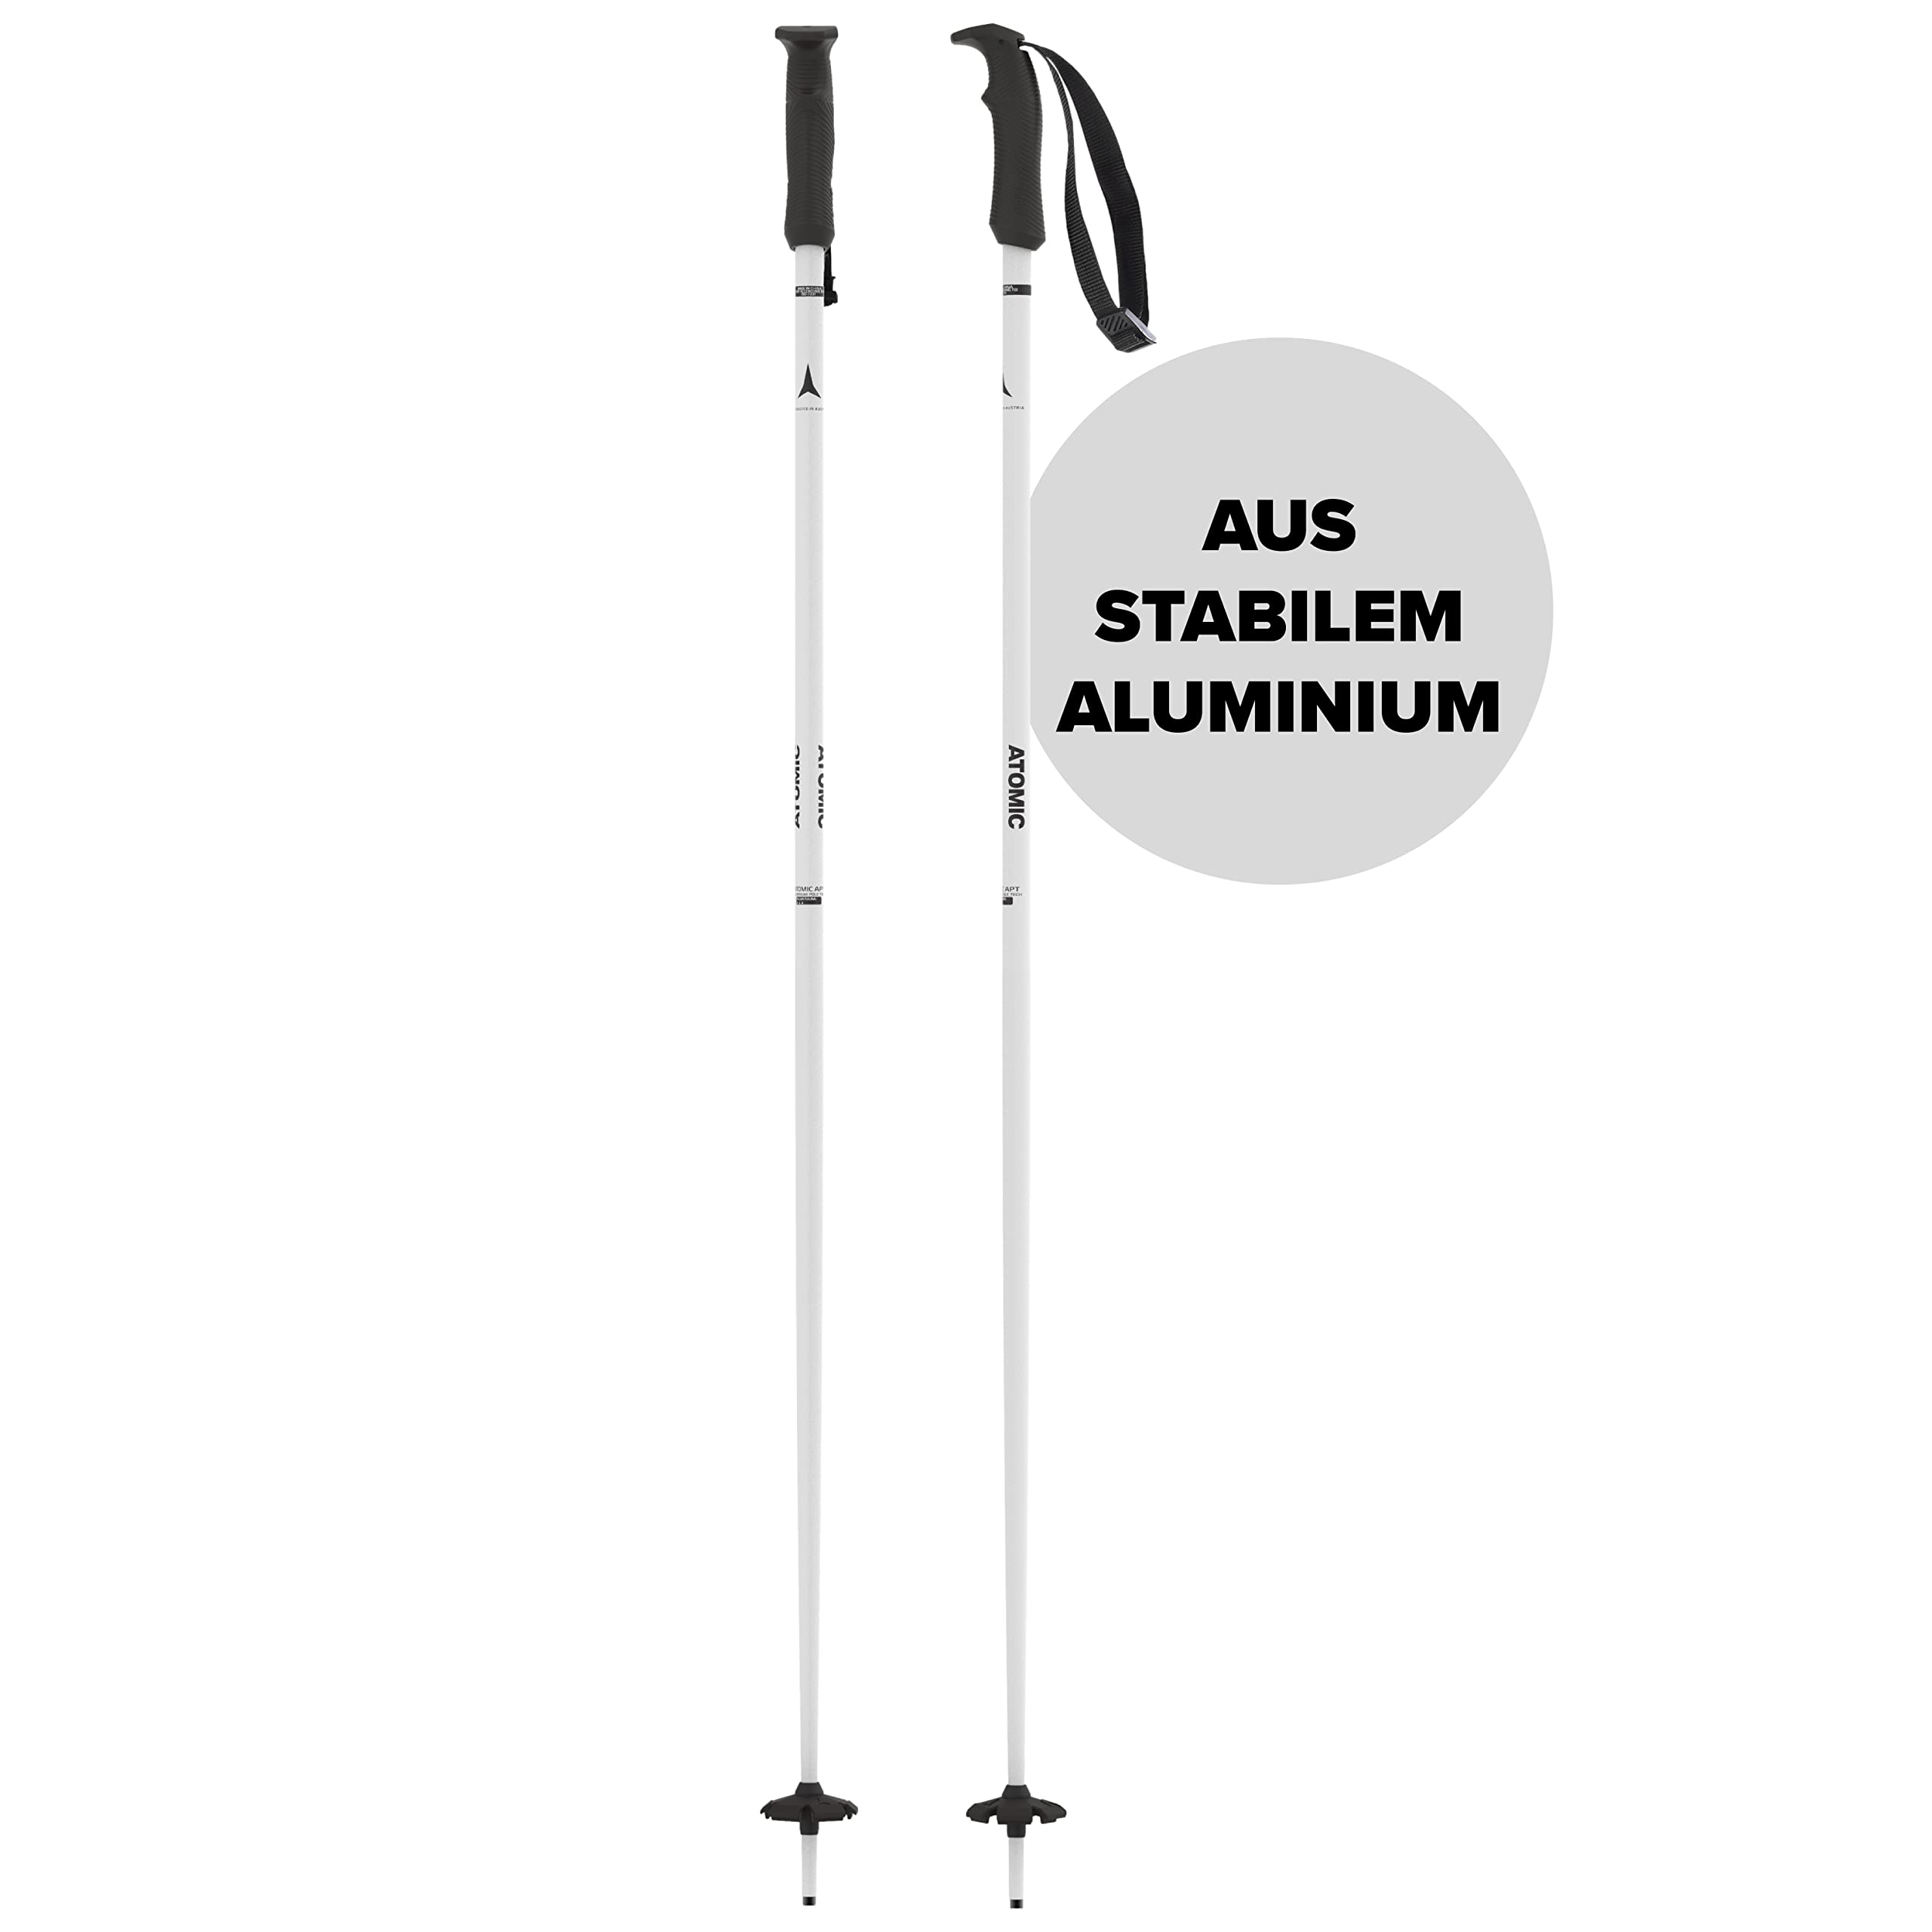 ATOMIC CLOUD Skistöcke - Weiß - Länge 110 cm - Hochwertiger Aluminium-Skistock - Ergonomischer Griff für mehr Grip - Stock mit 60 mm Pistenteller - Einsteiger-Stöcke